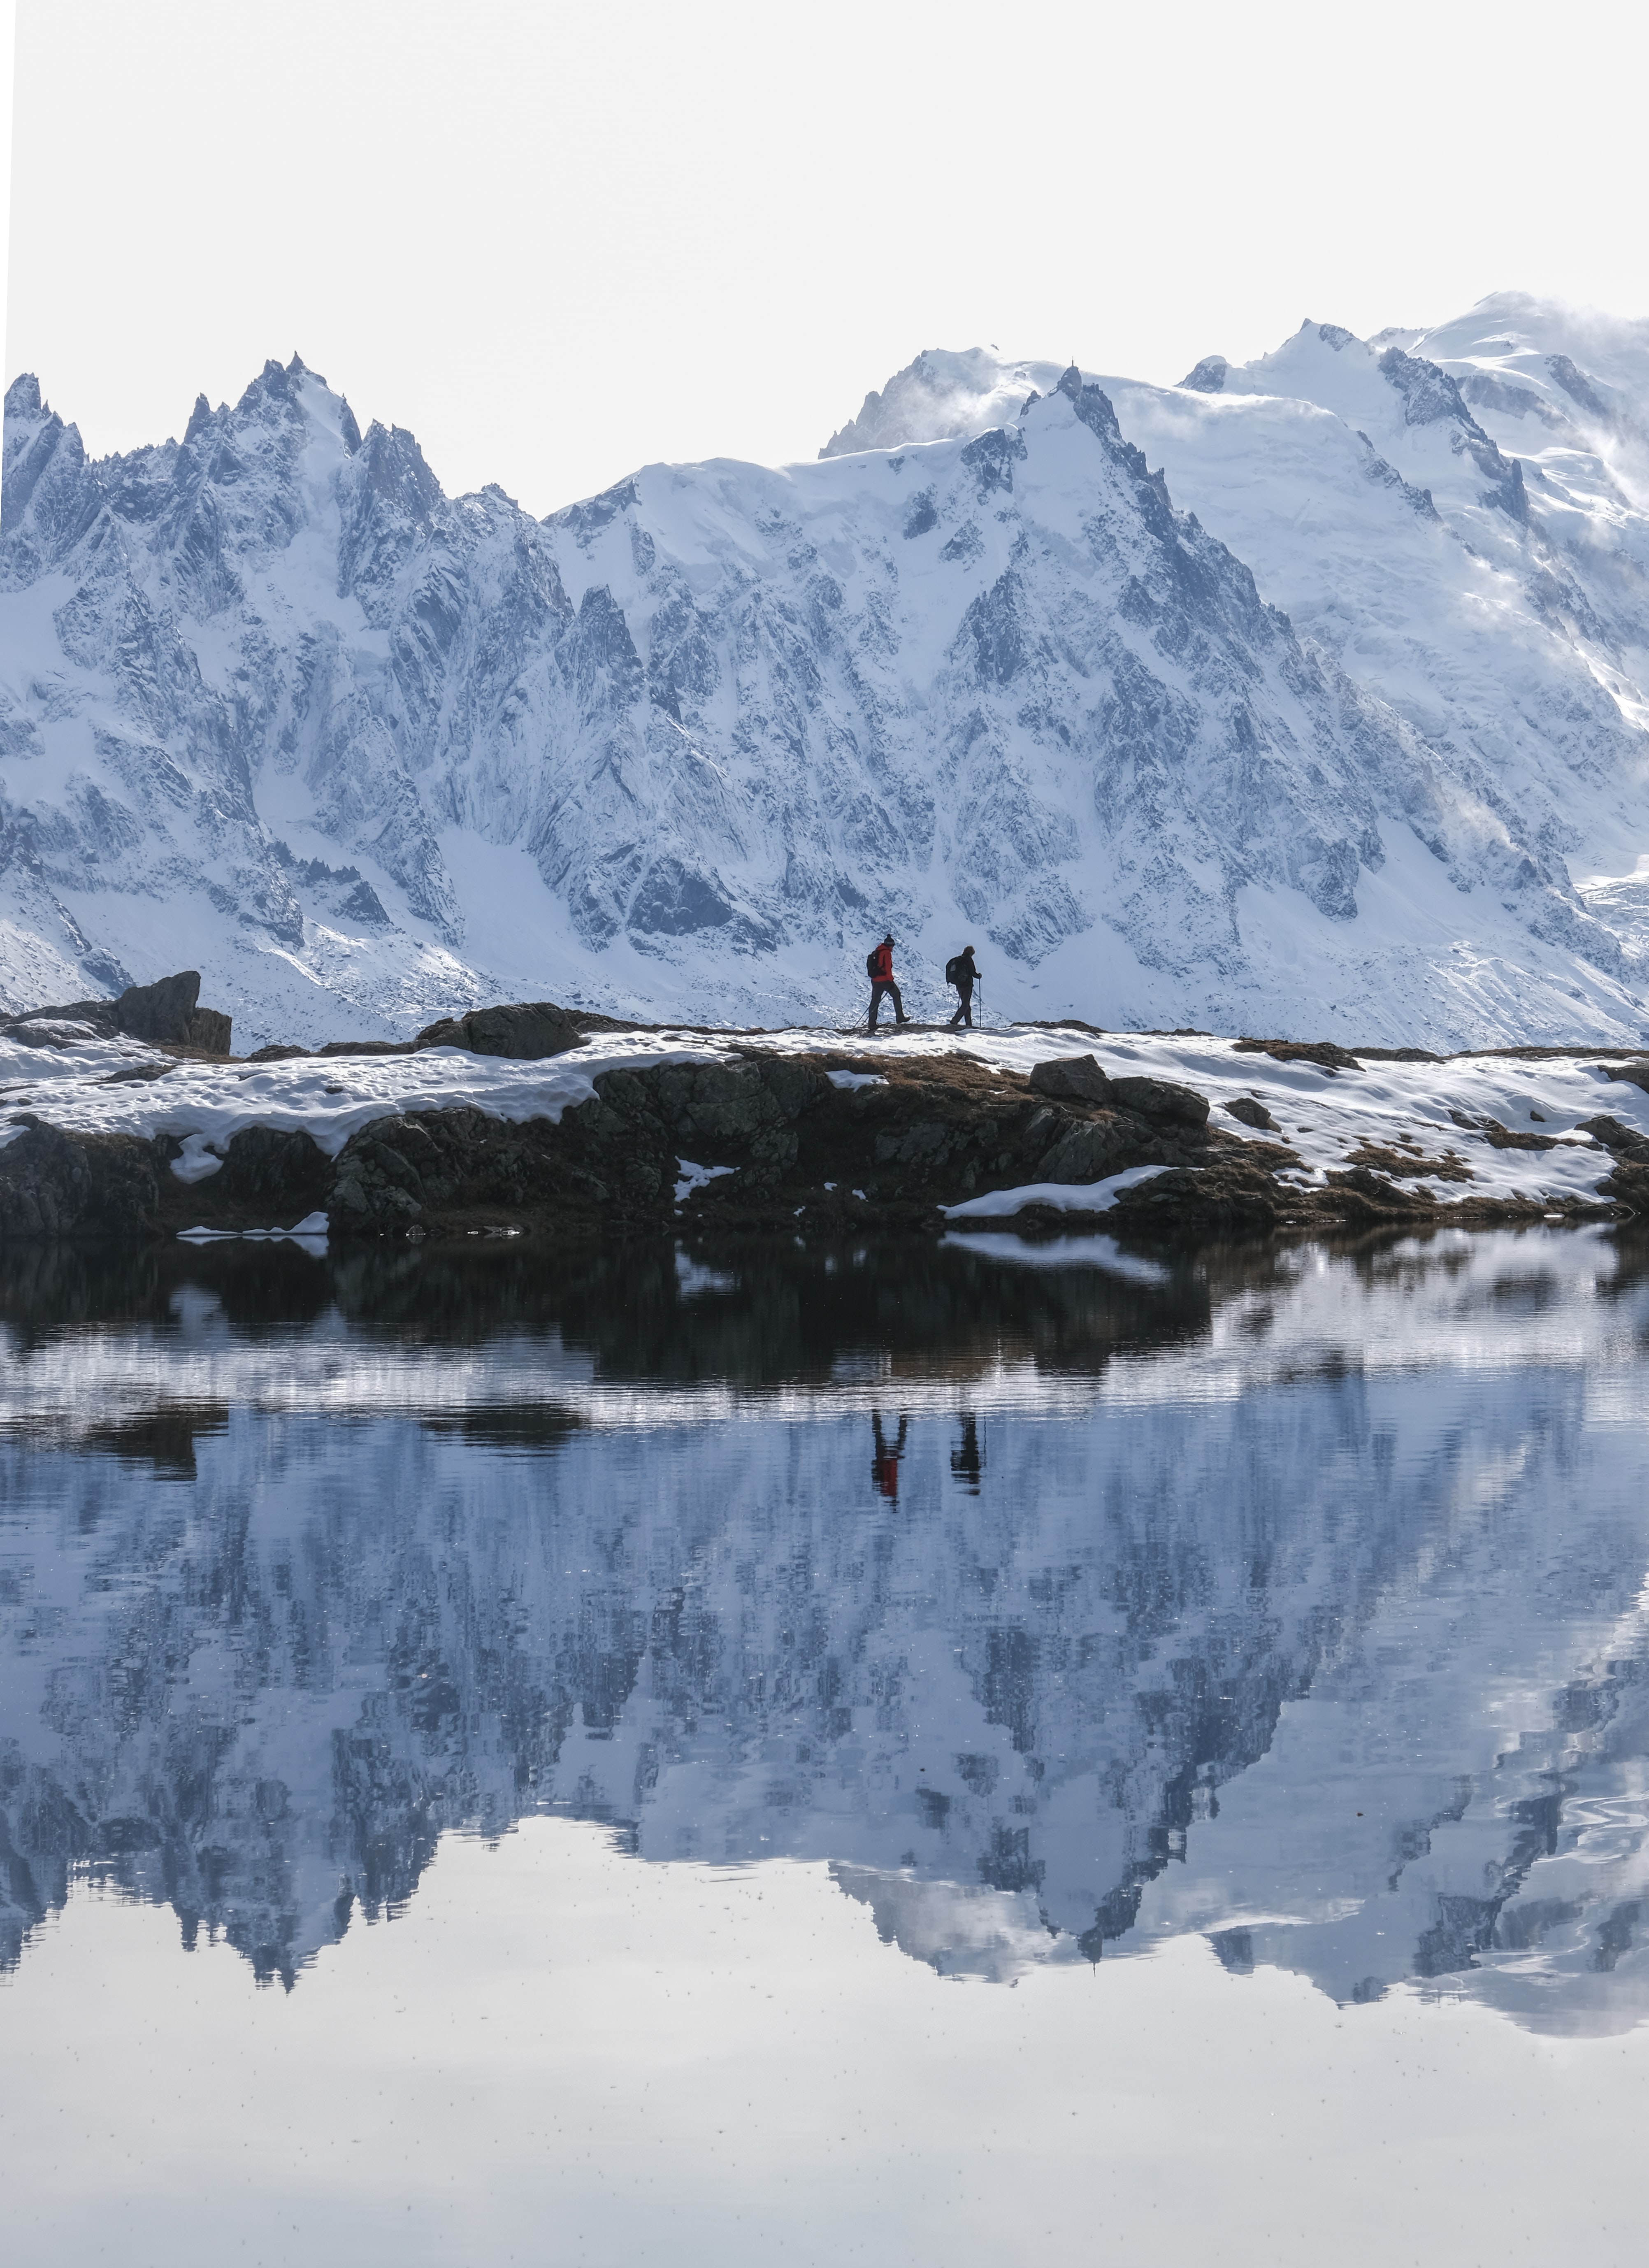 Скачать обои бесплатно Гора, Природа, Снег, Озеро, Разное, Путешествие, Люди картинка на рабочий стол ПК